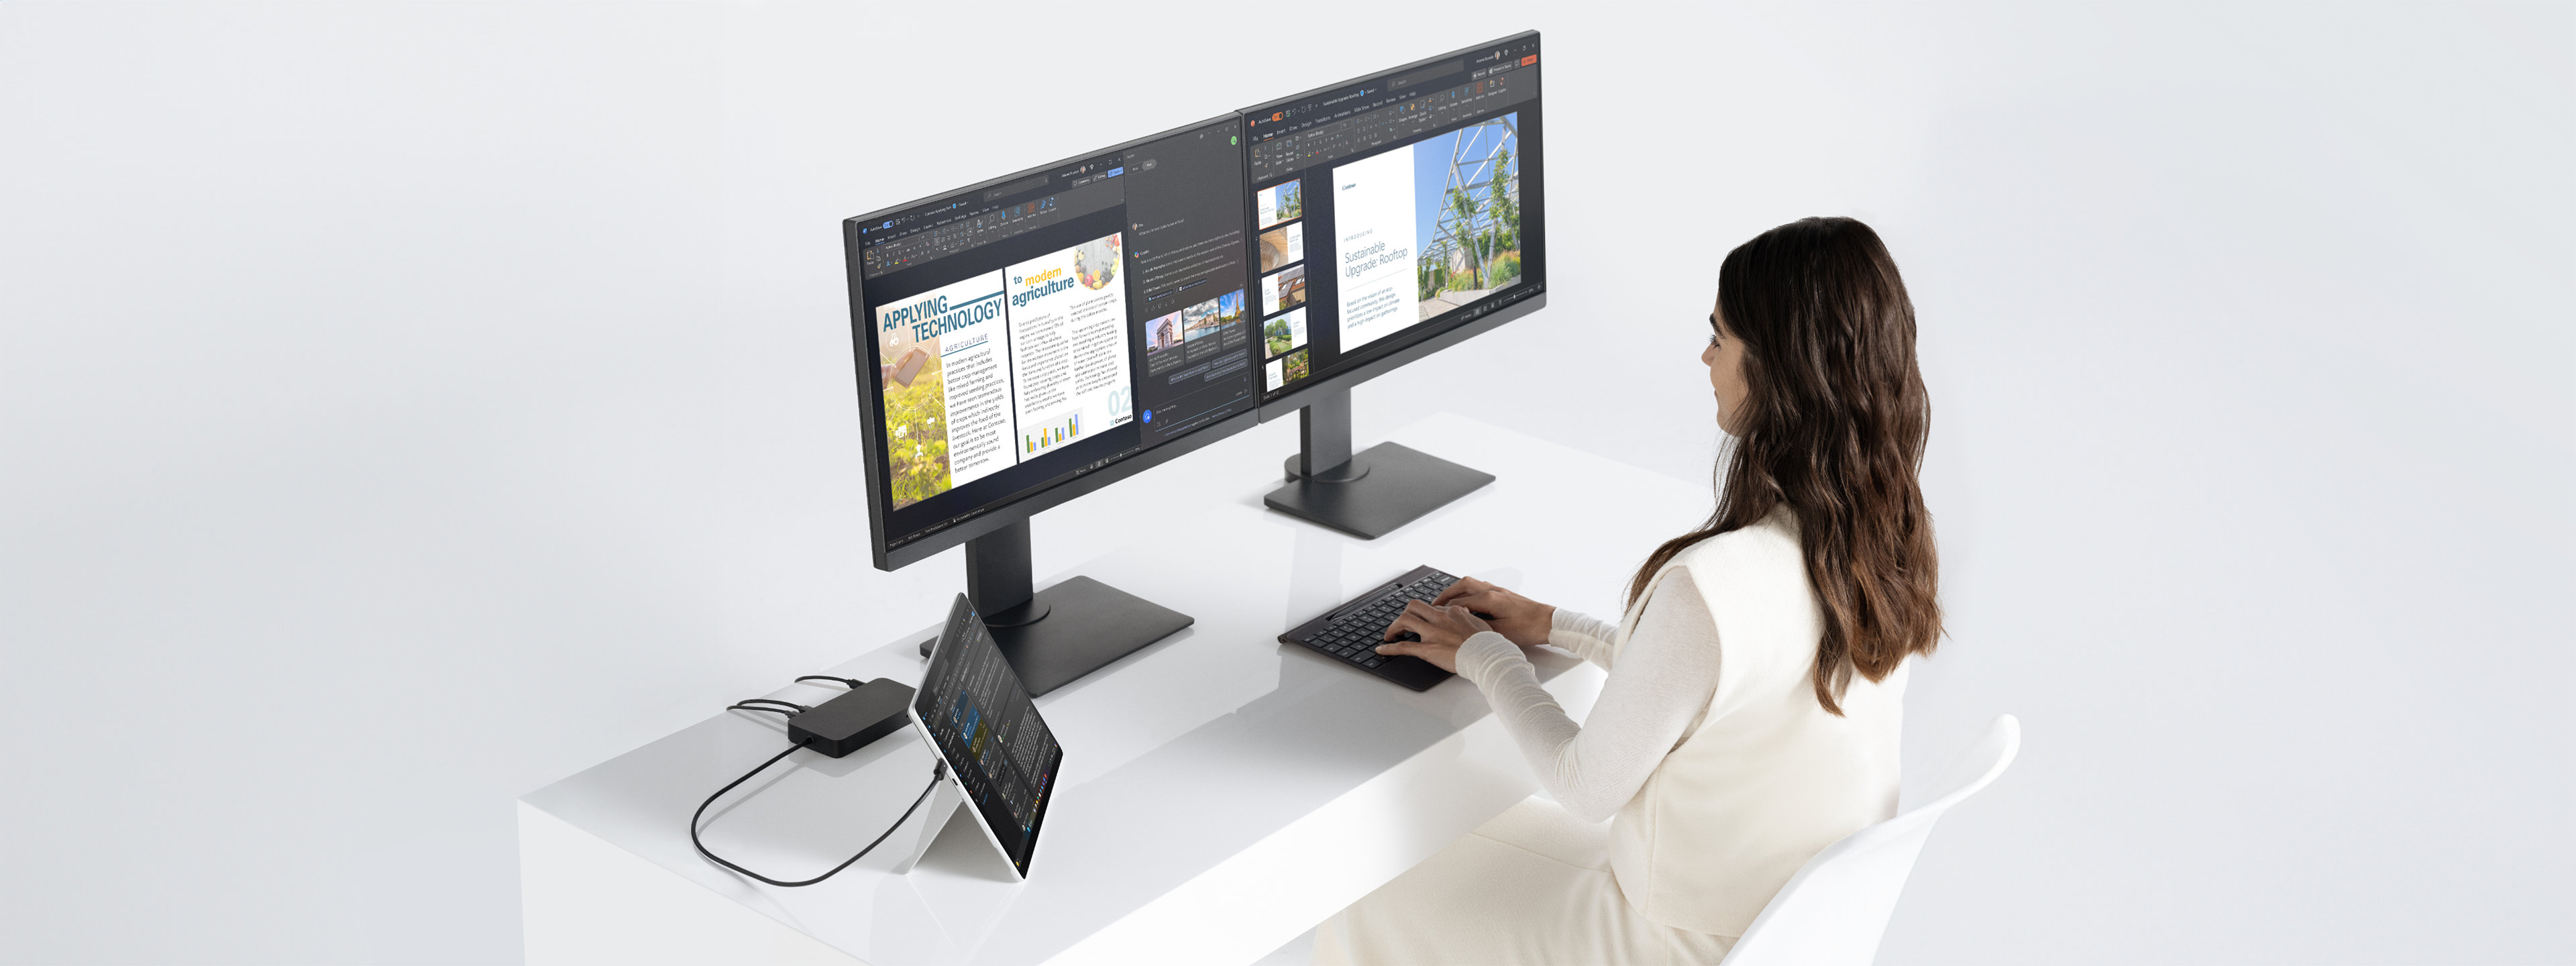 한 여성이 킥스탠드 모드의 Surface Pro 디바이스에 도크를 통해 모니터 두 대를 연결하고 책상에 앉아 일을 합니다.